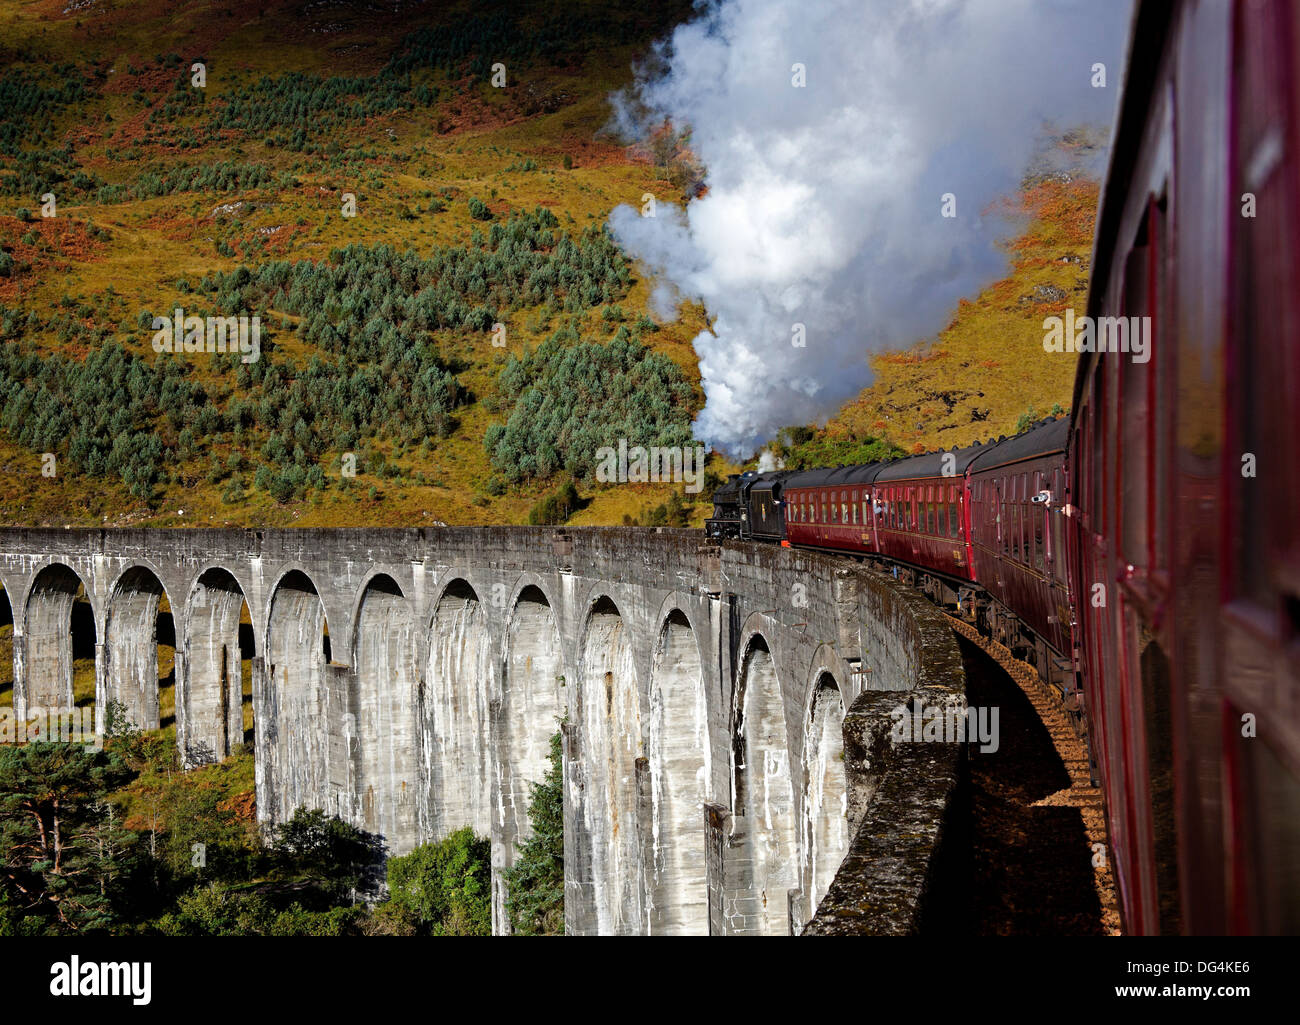 Passage du Train à vapeur Jacobite viaduc de Glenfinnan Ecosse Lochaber UK Banque D'Images